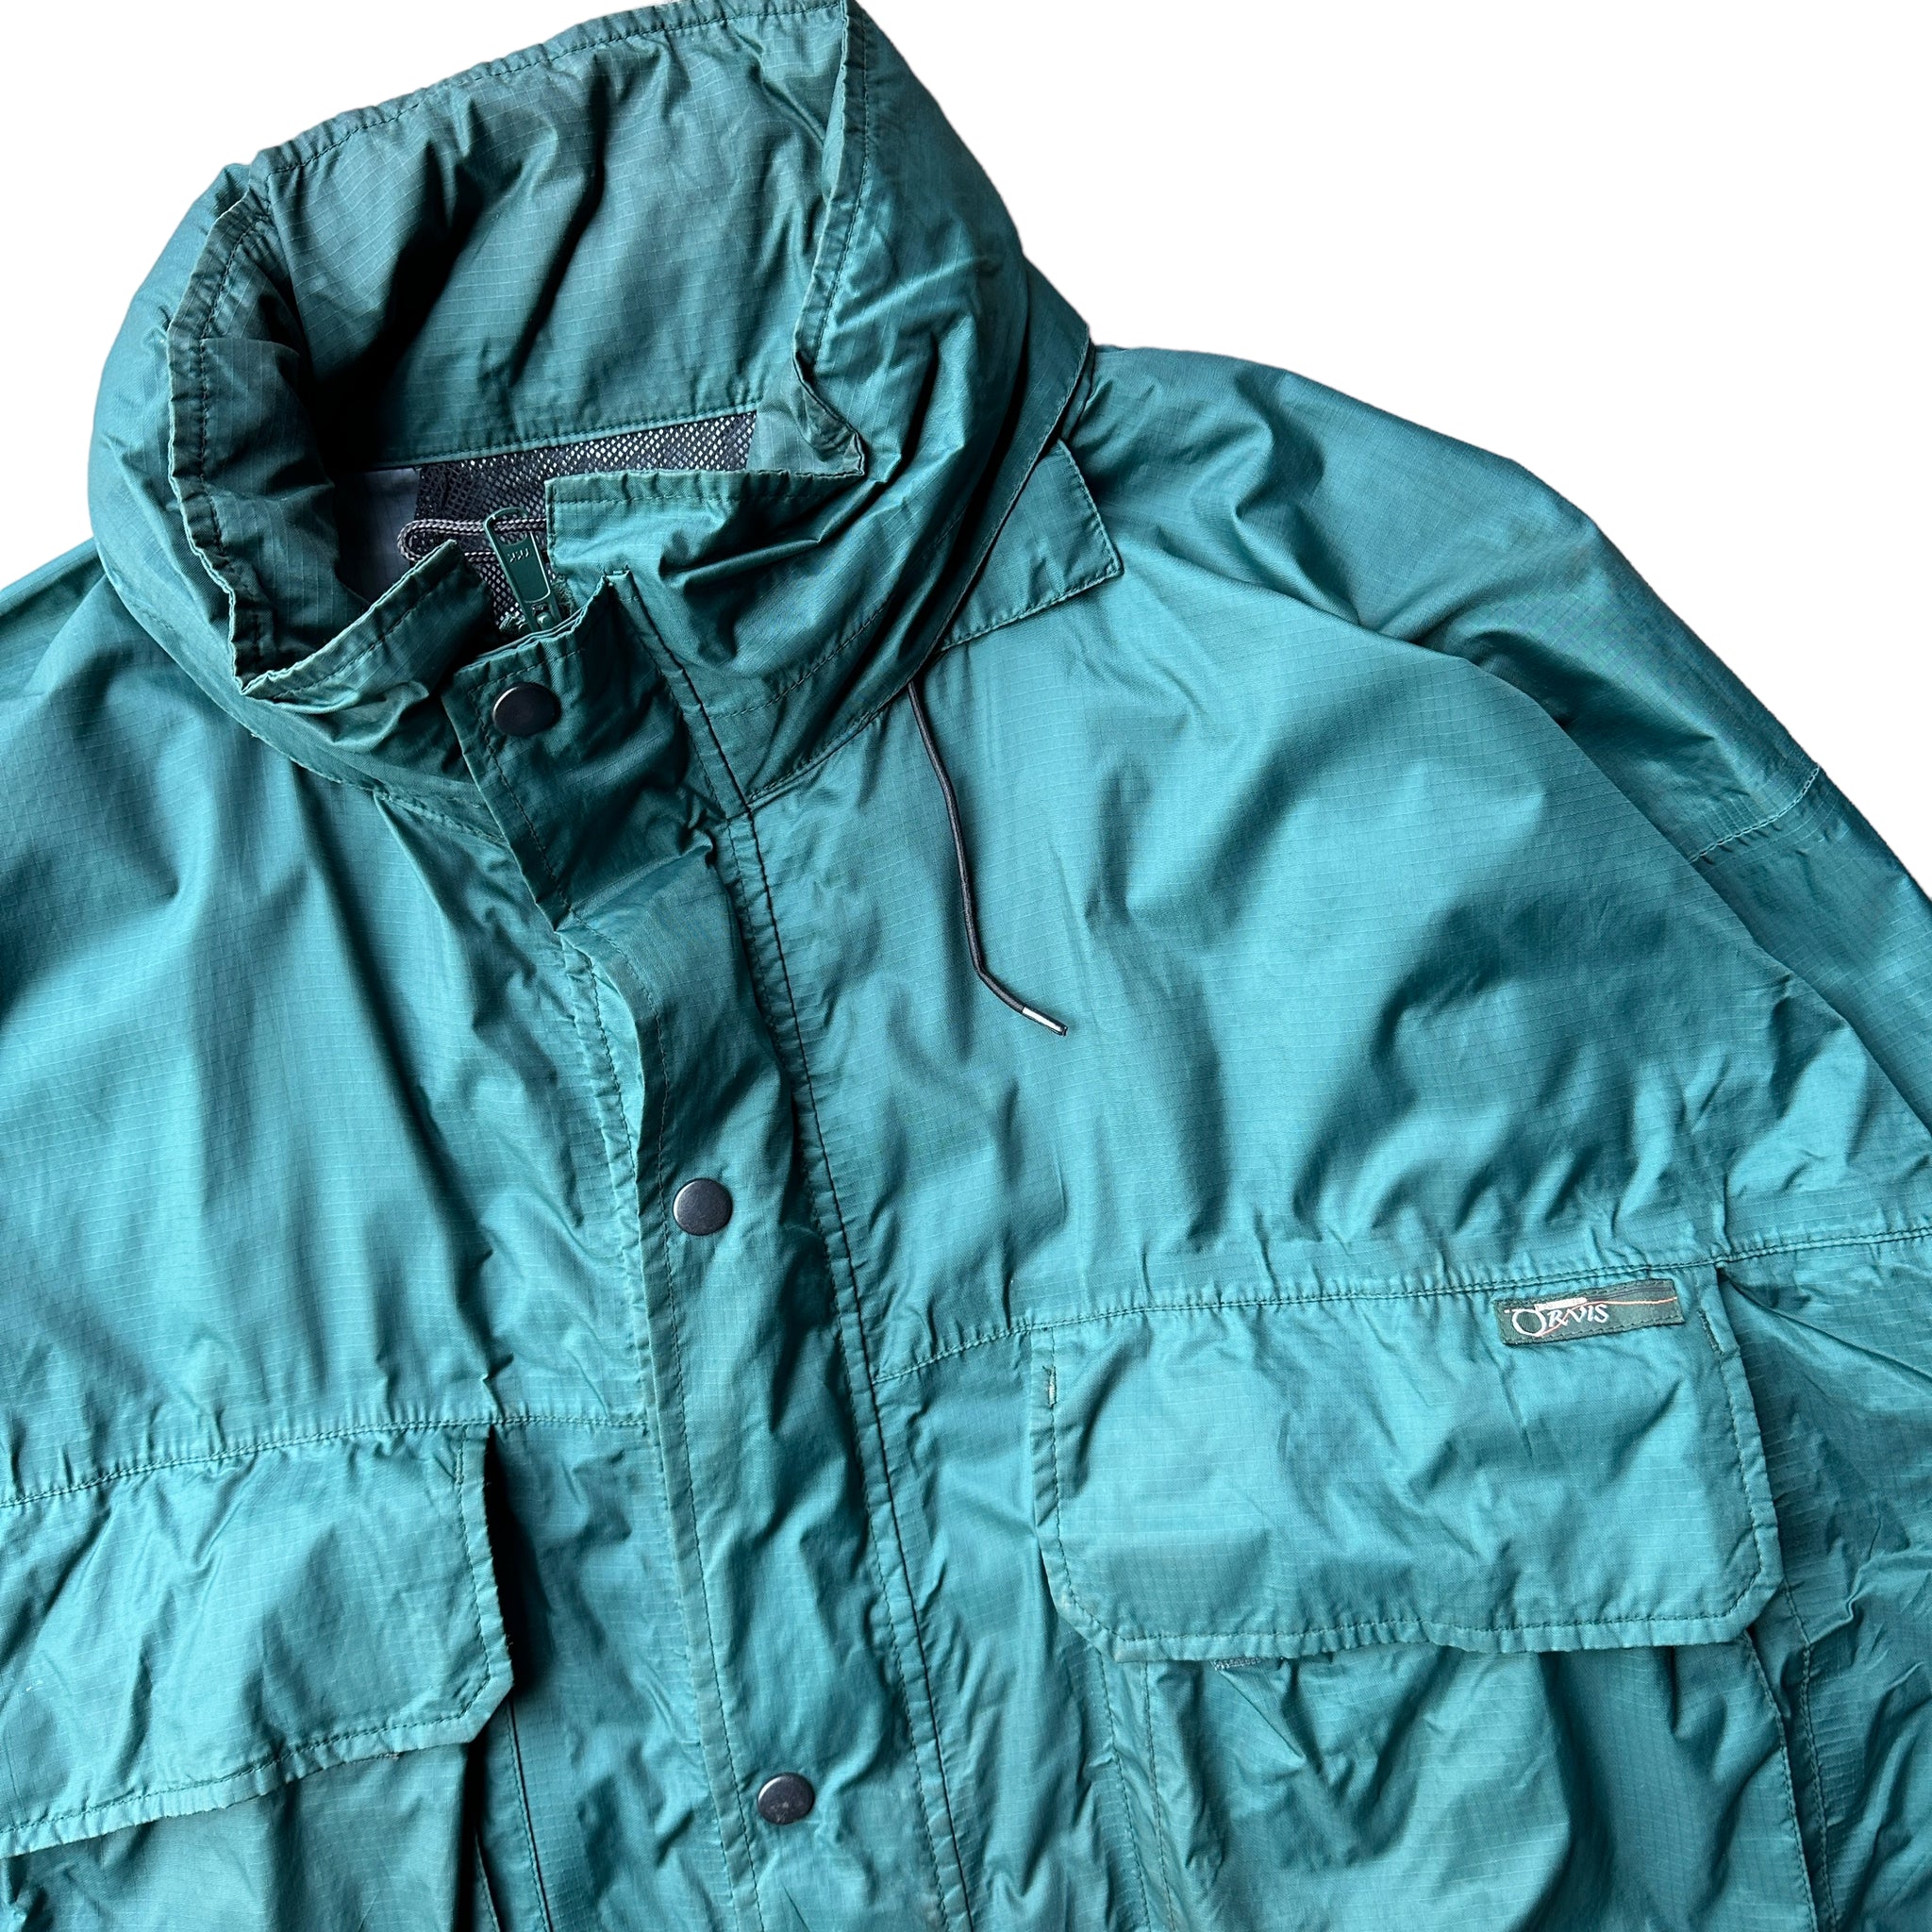 90s Orvis fishing jacket large